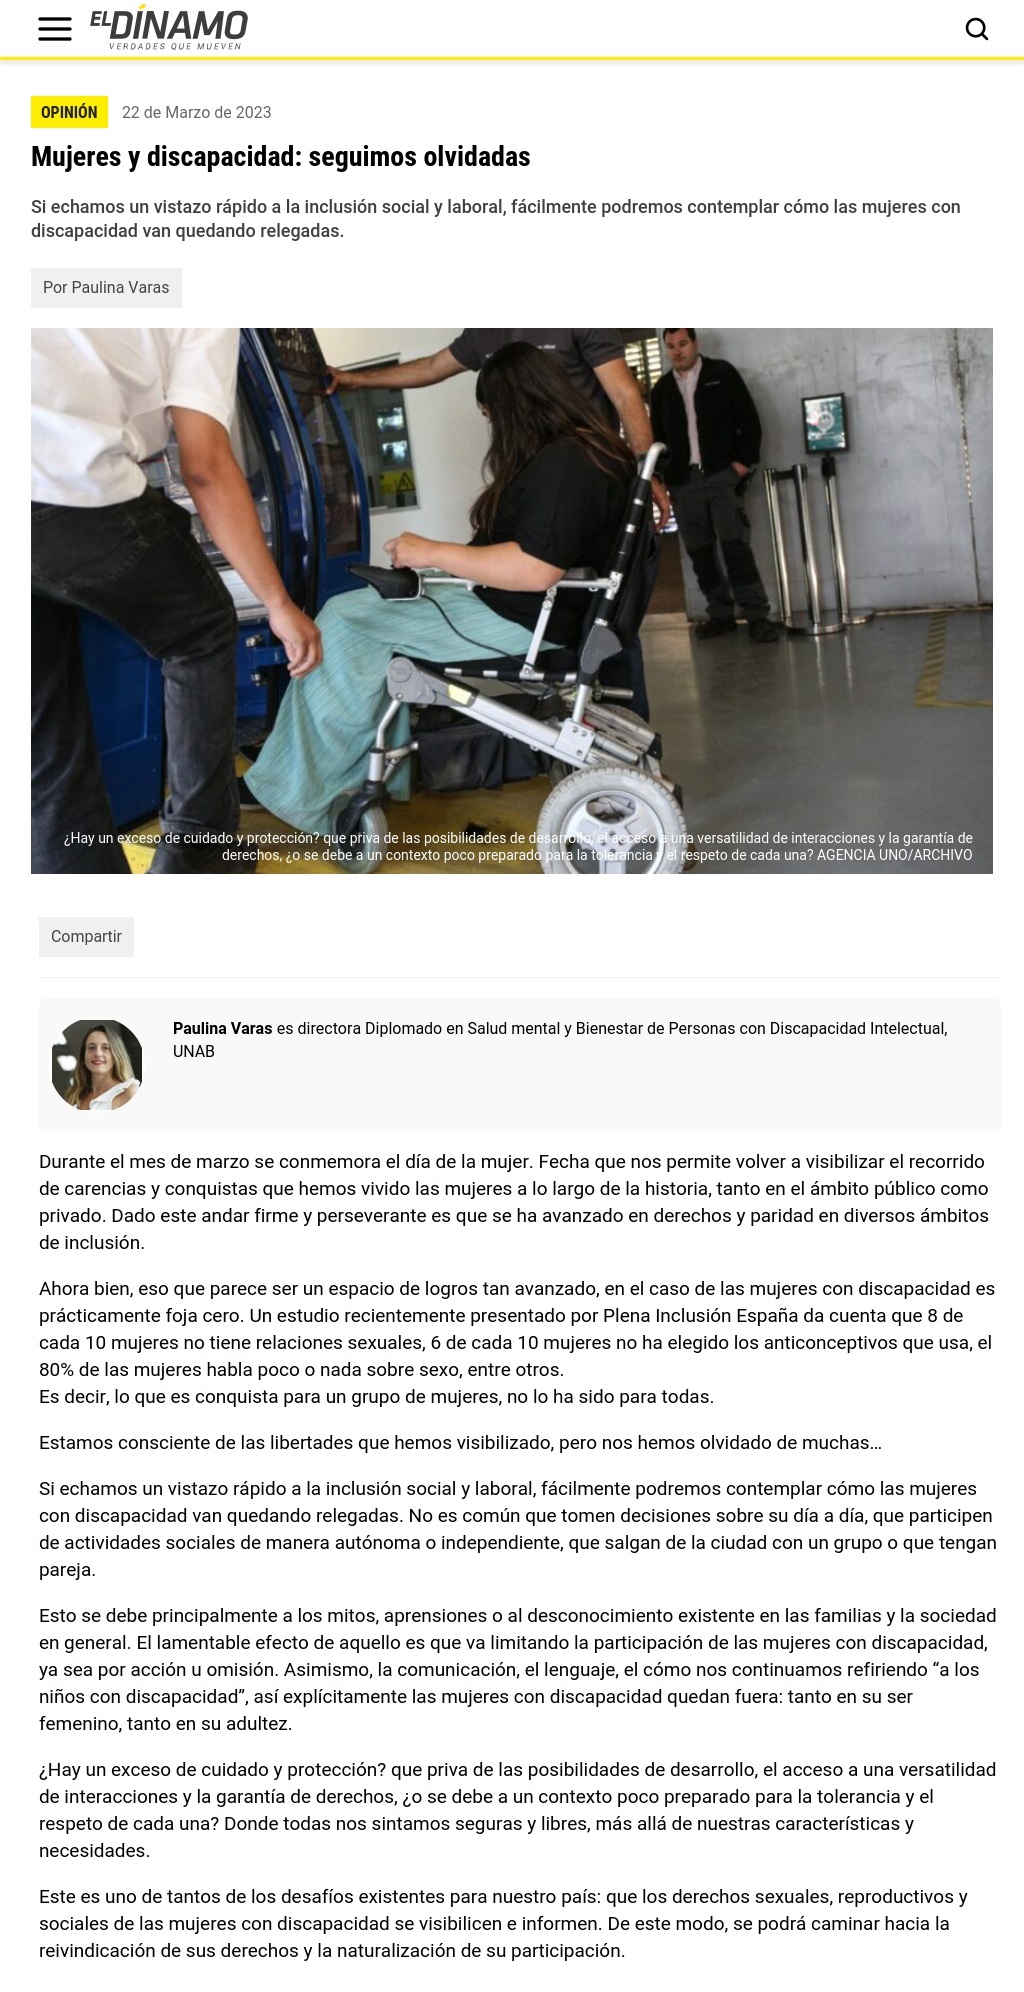 Mujeres y discapacidad. Noticias UNAB